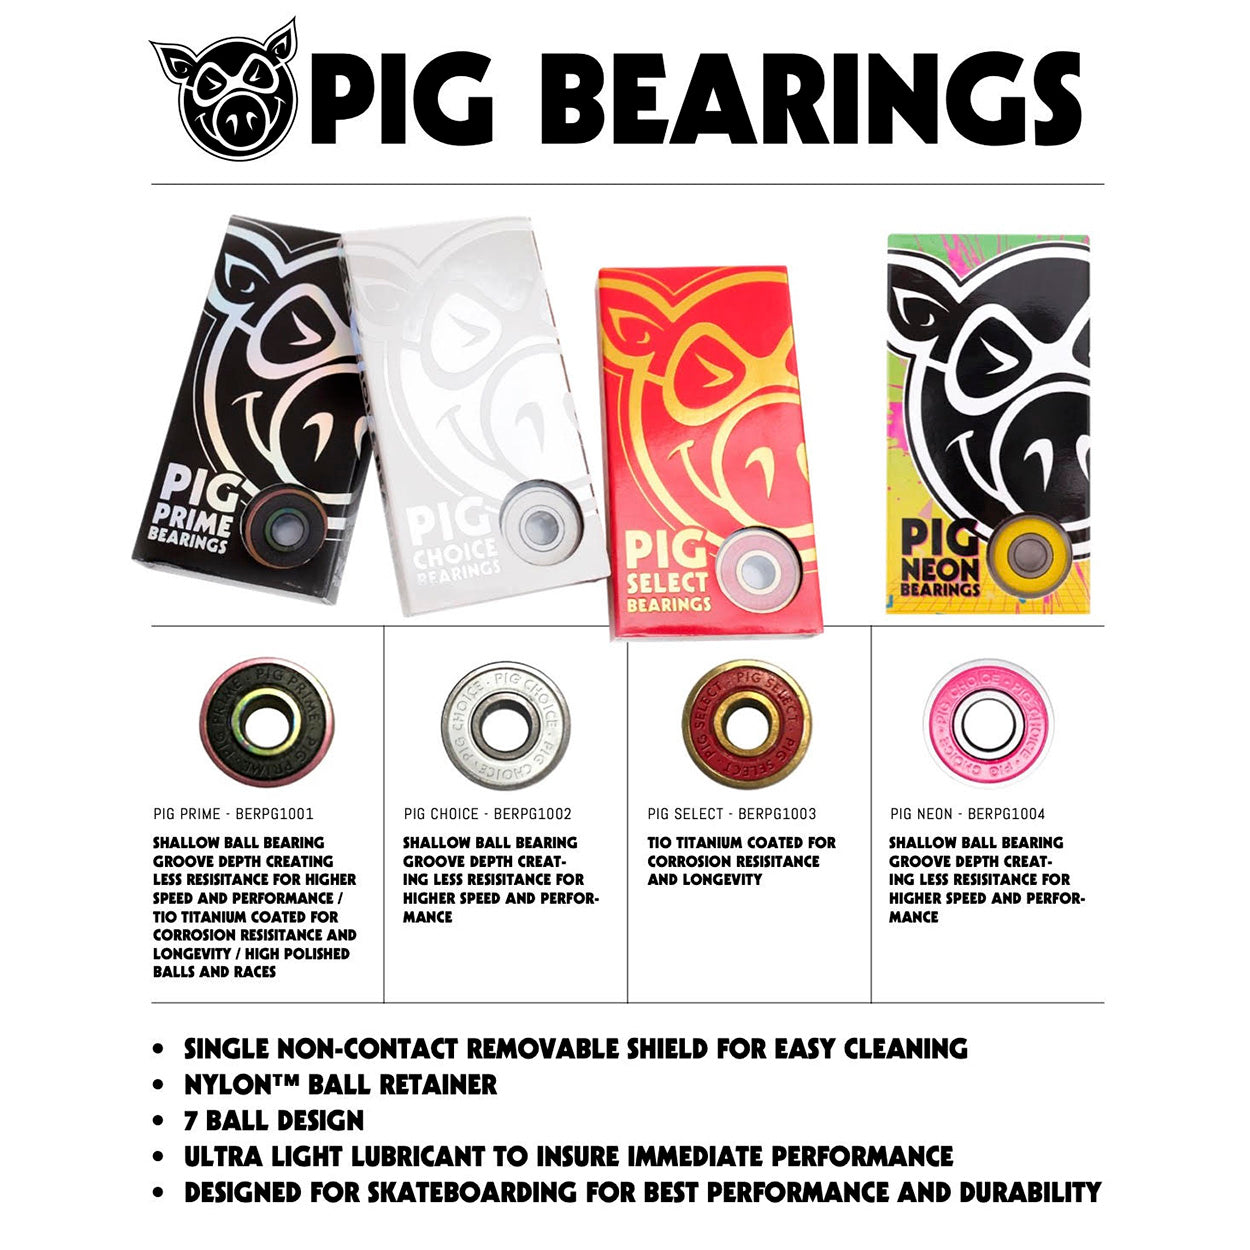 PIG Neon Bearings